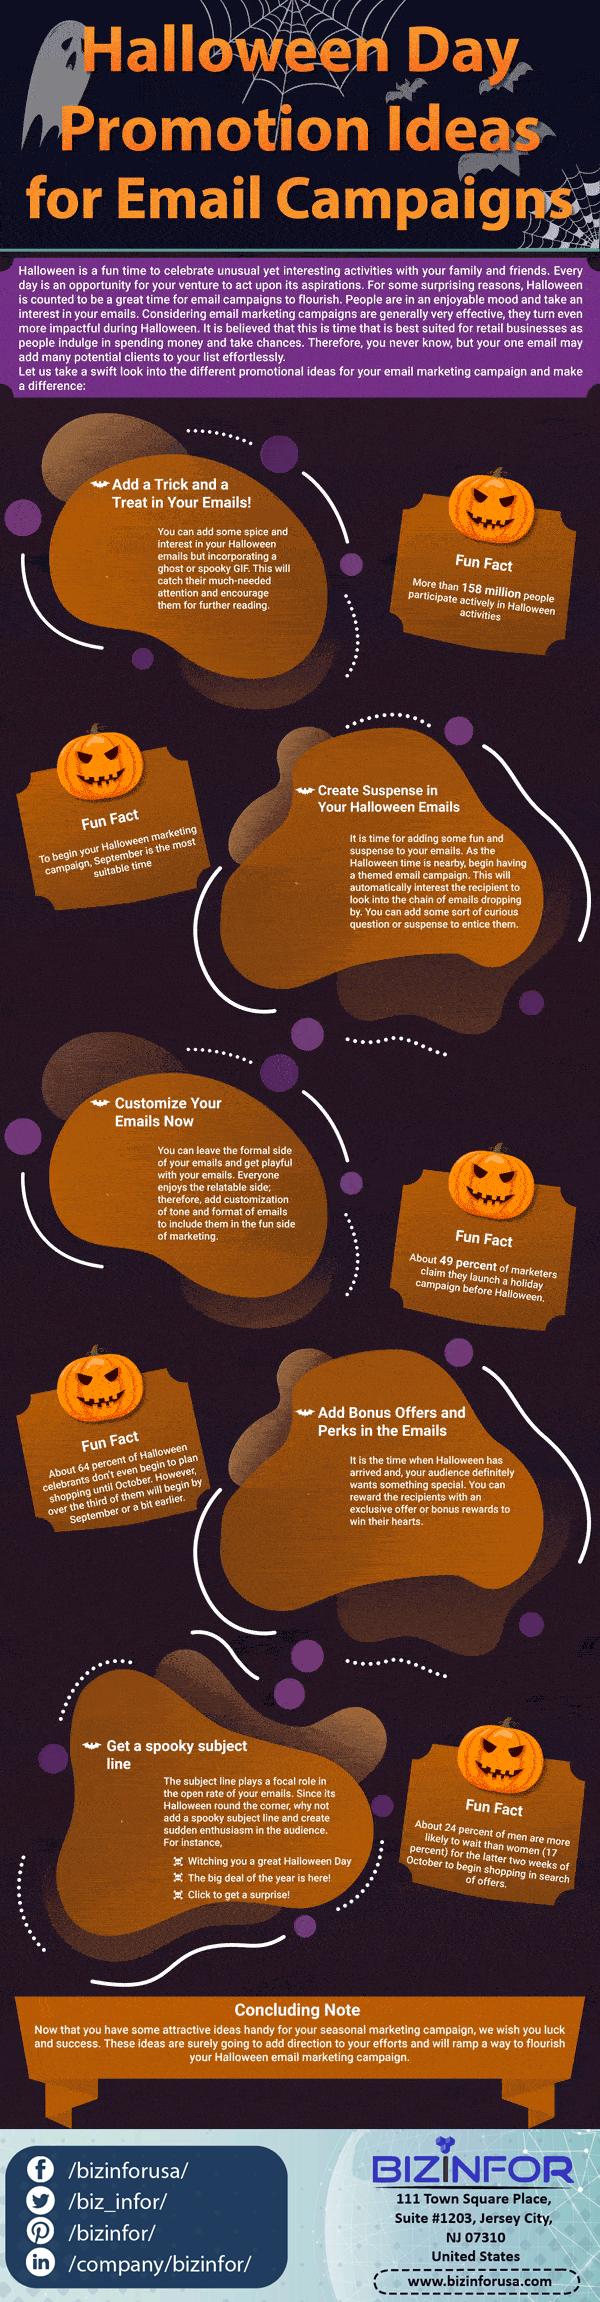 Halloween Day Ideas